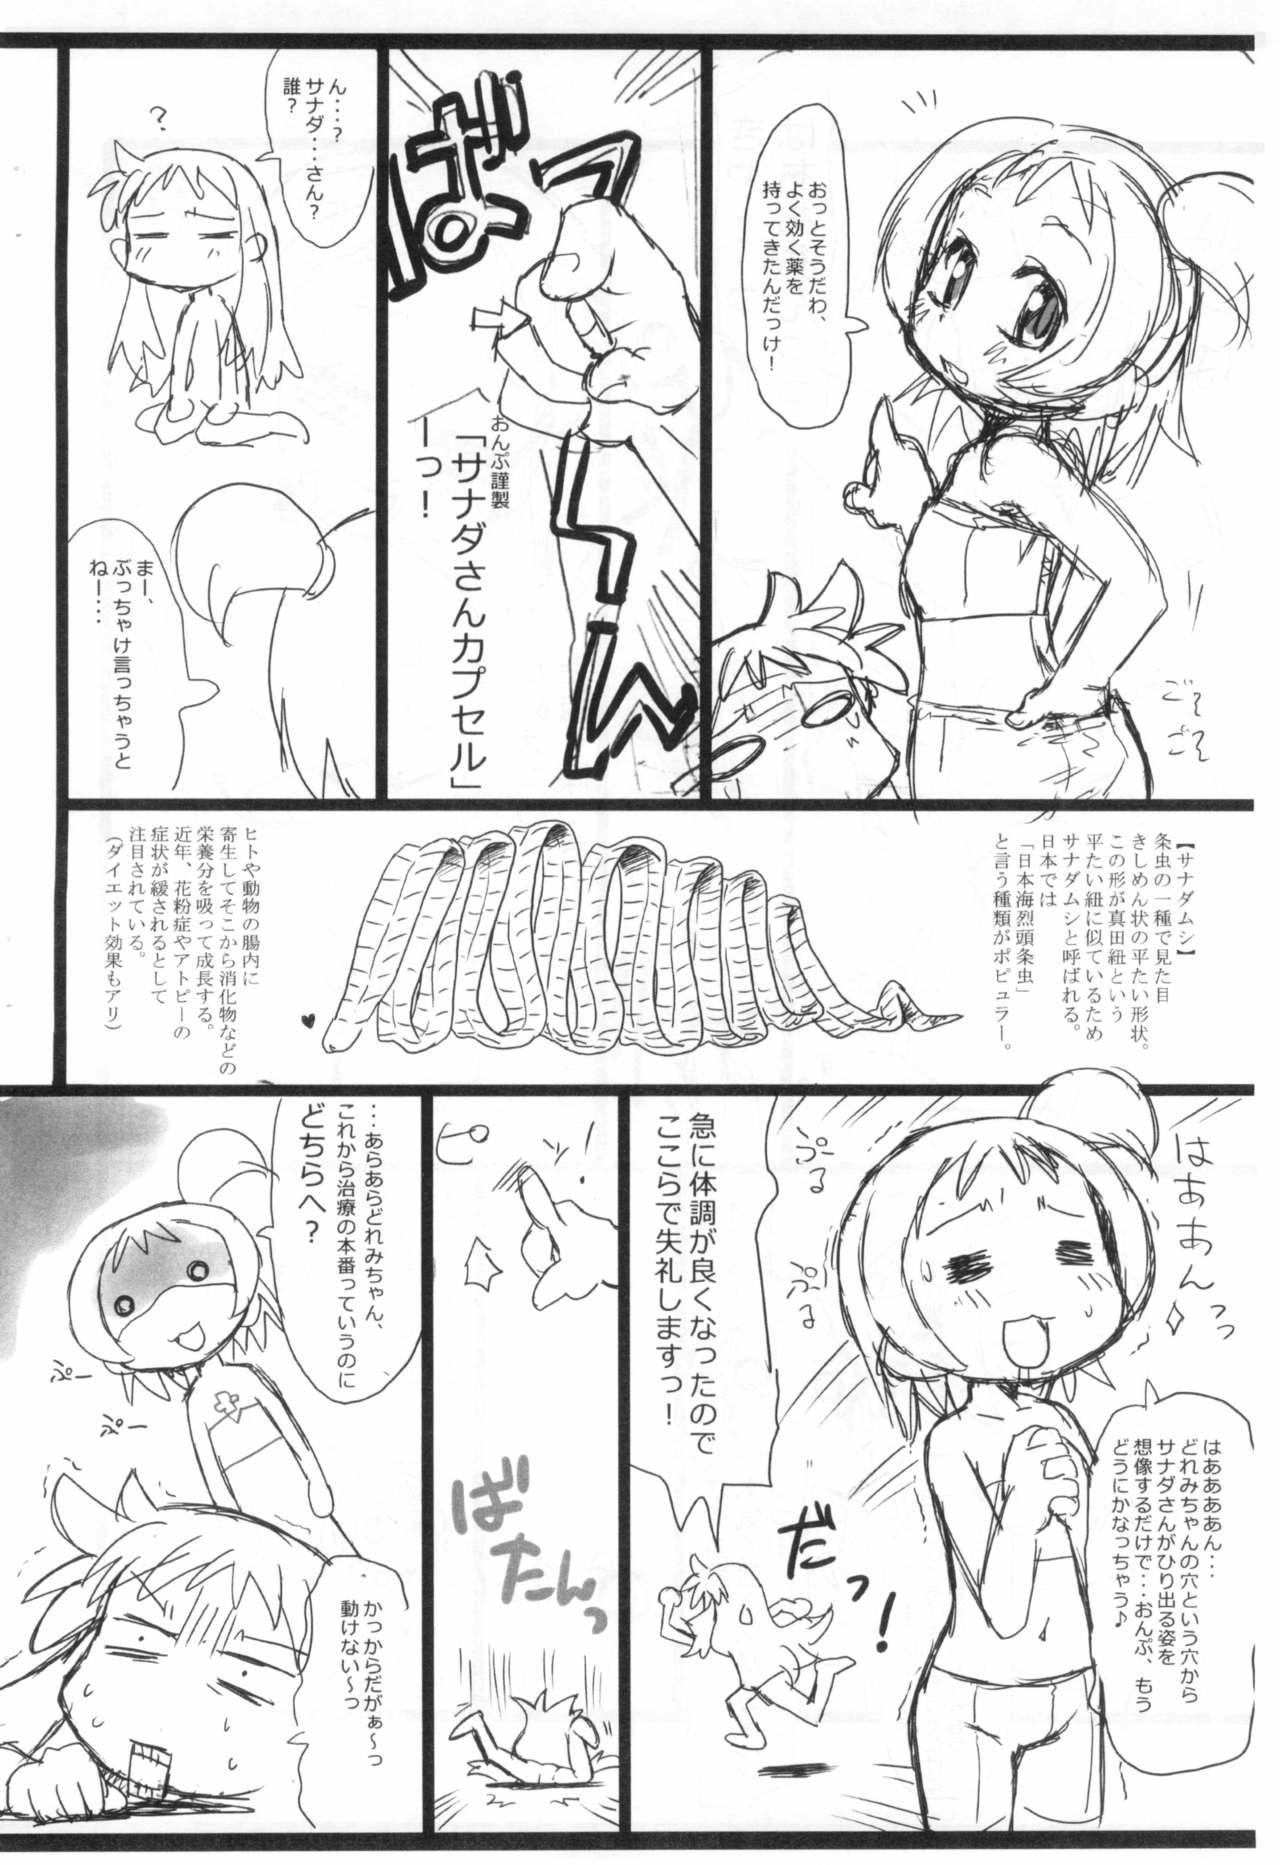 Buttfucking Kafun to Kiseichuu to Majo Minarai. - Ojamajo doremi | magical doremi Free Blow Job Porn - Page 12